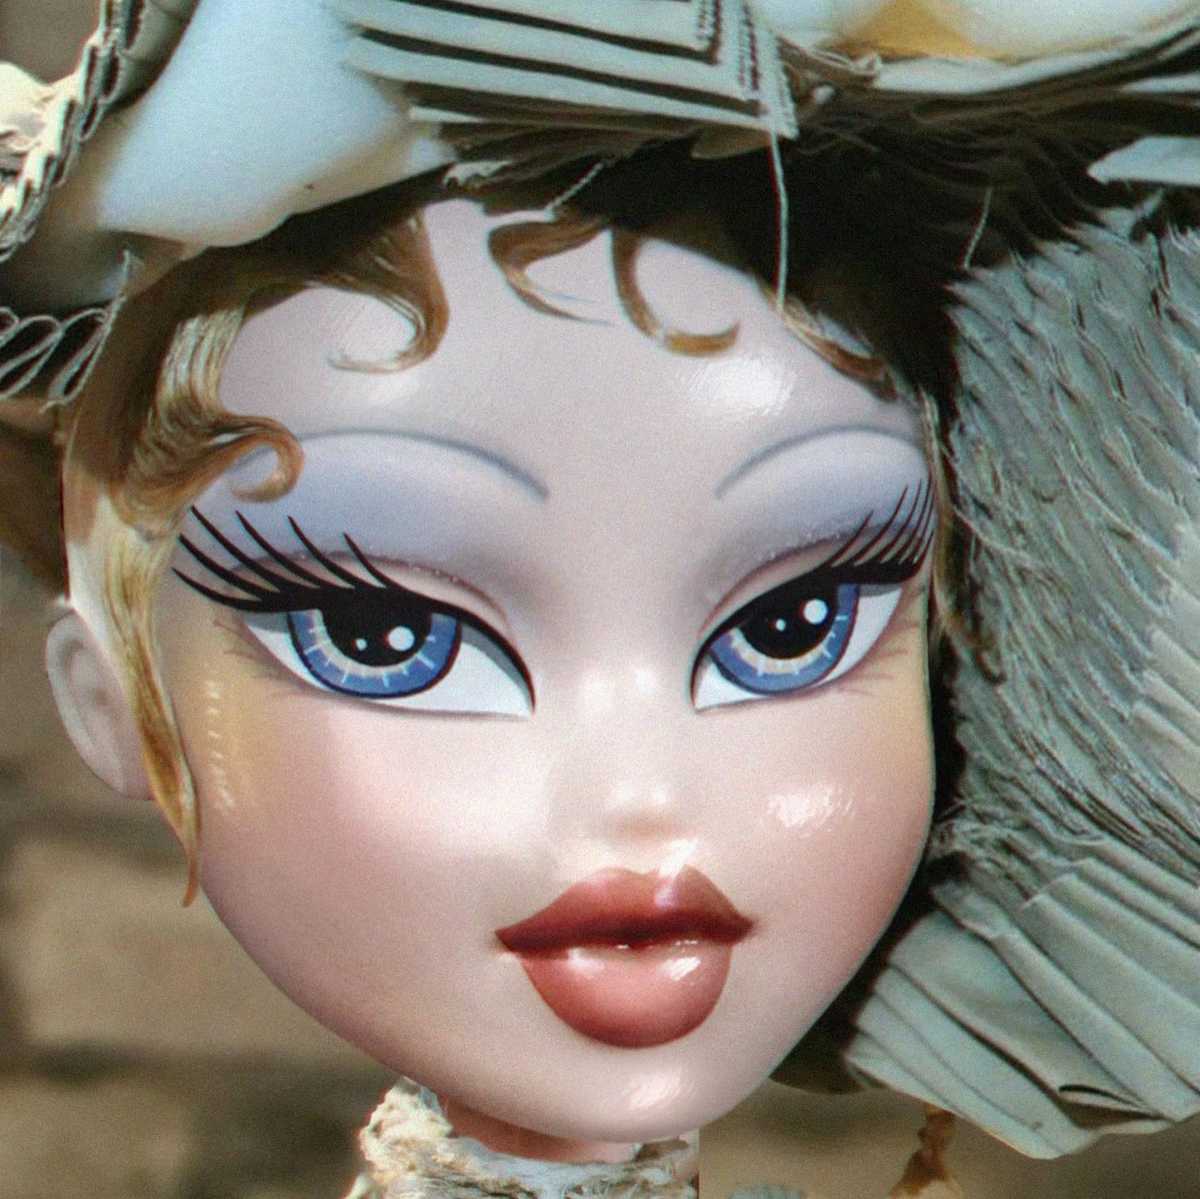 Porcelain doll make up Pat McGrath